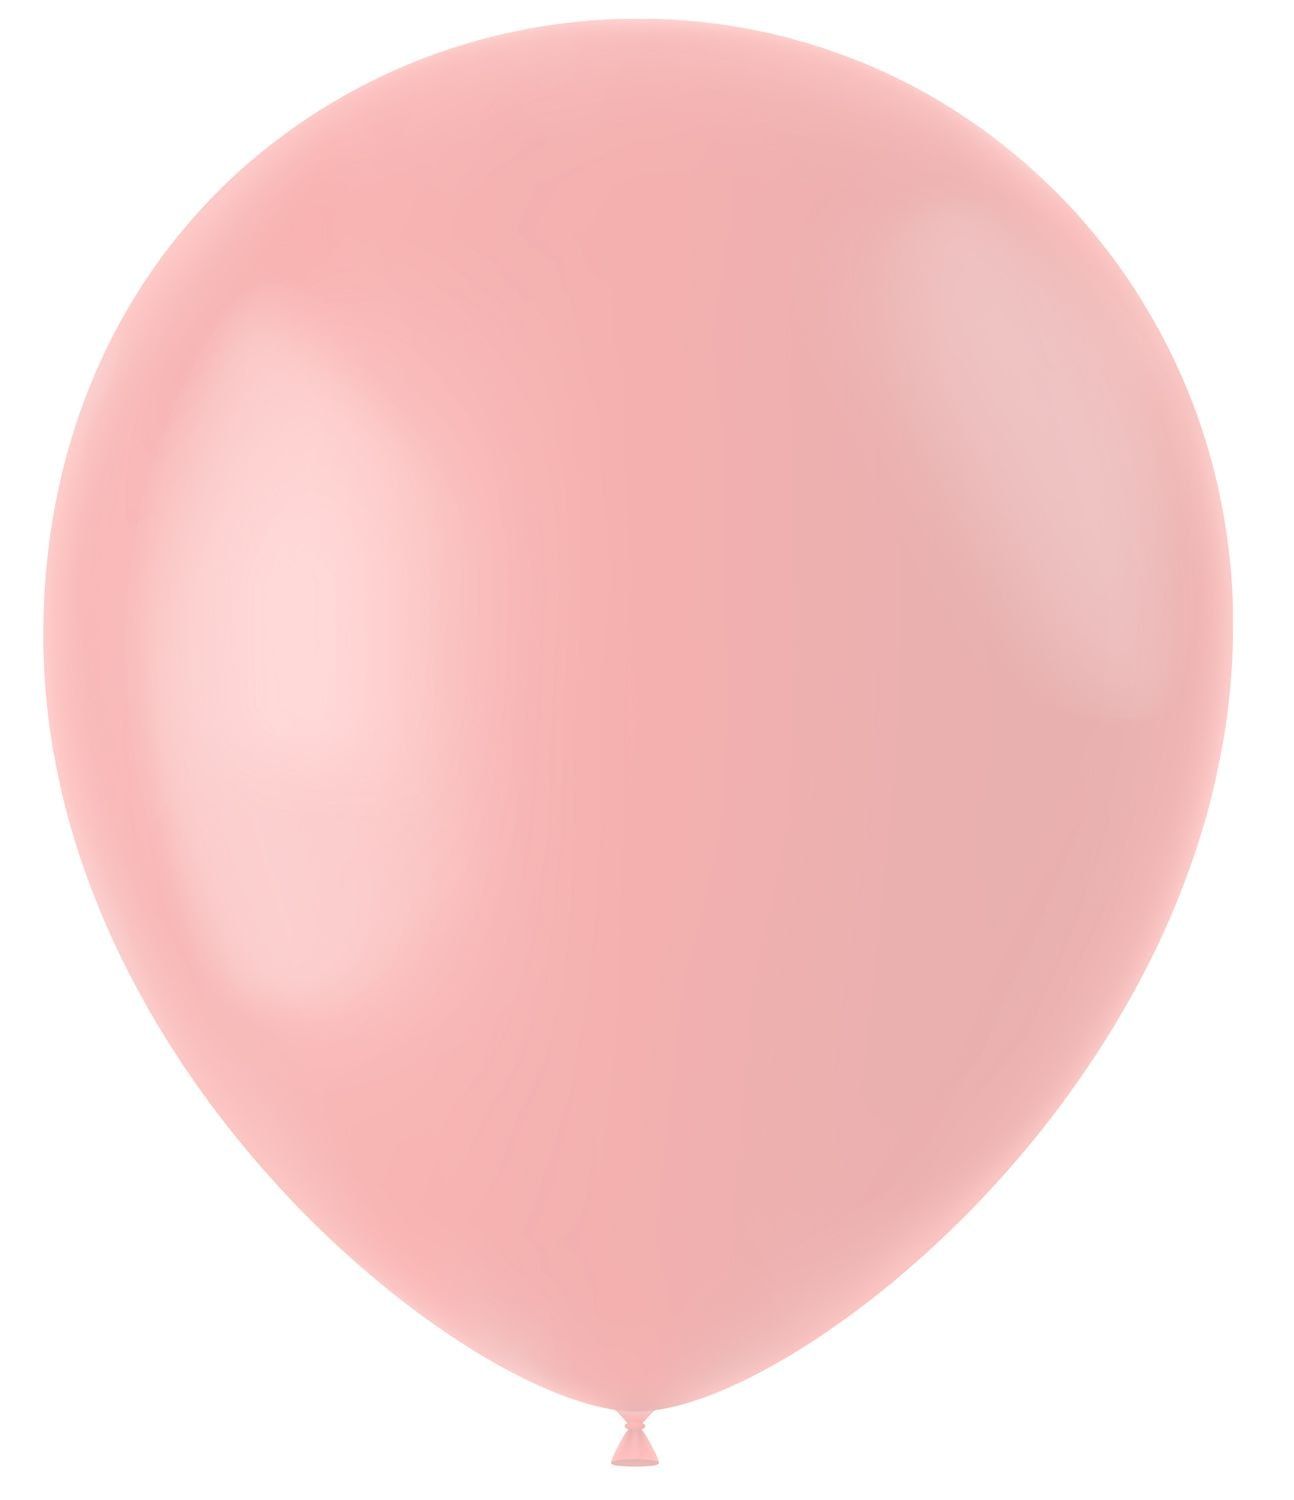 50 ballonnen powder pink mat 33cm